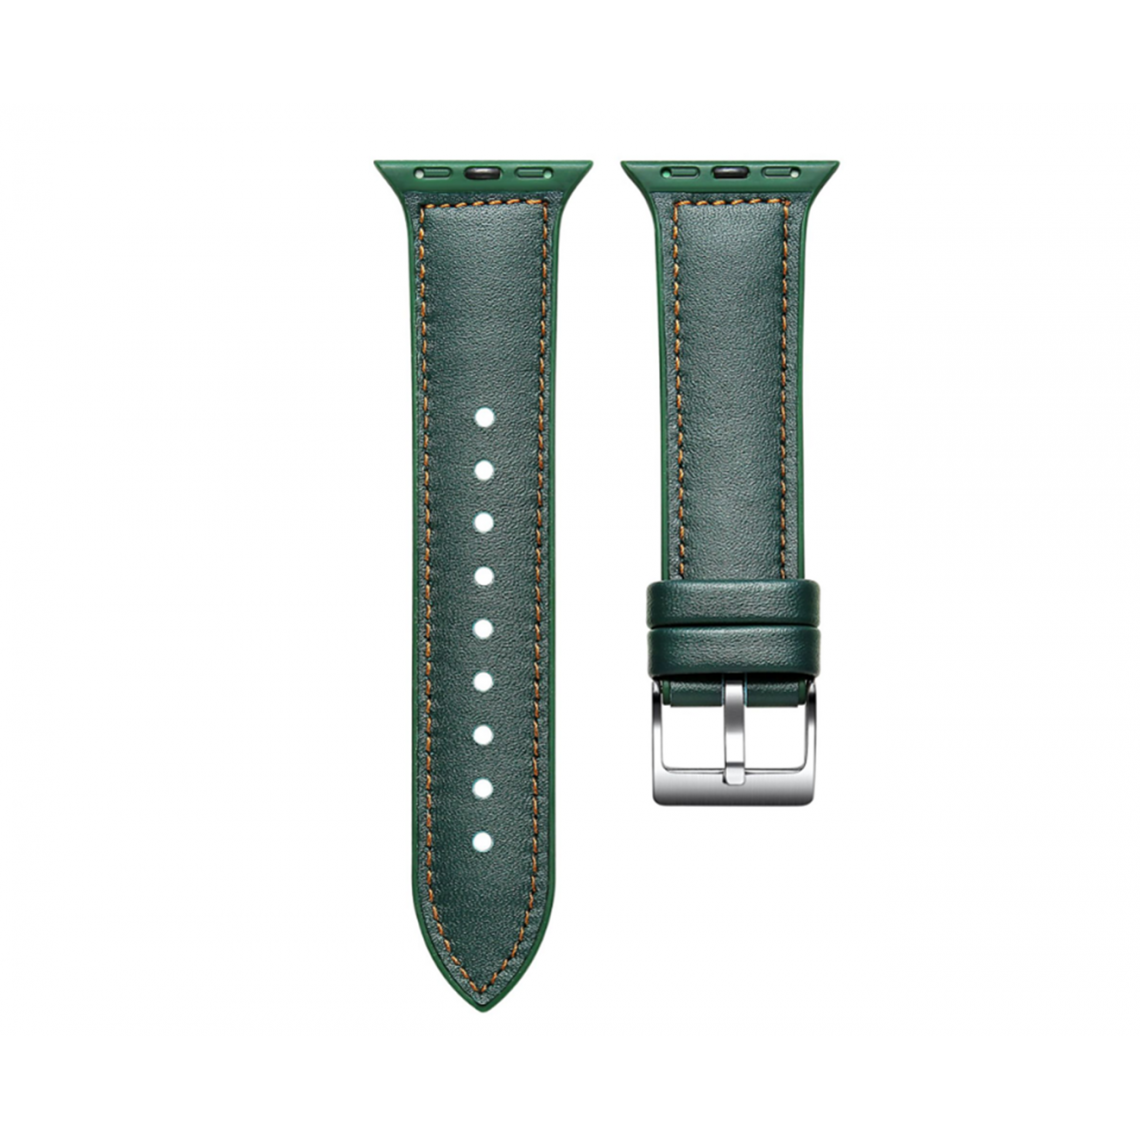 Generic - B03 Cuir Vert Sport Sangle de rechange Bracelet de rechange Apple Watch Band 42mm 44mmmwomen Hommes pour iWatch3456 Génération SE - Accessoires Apple Watch